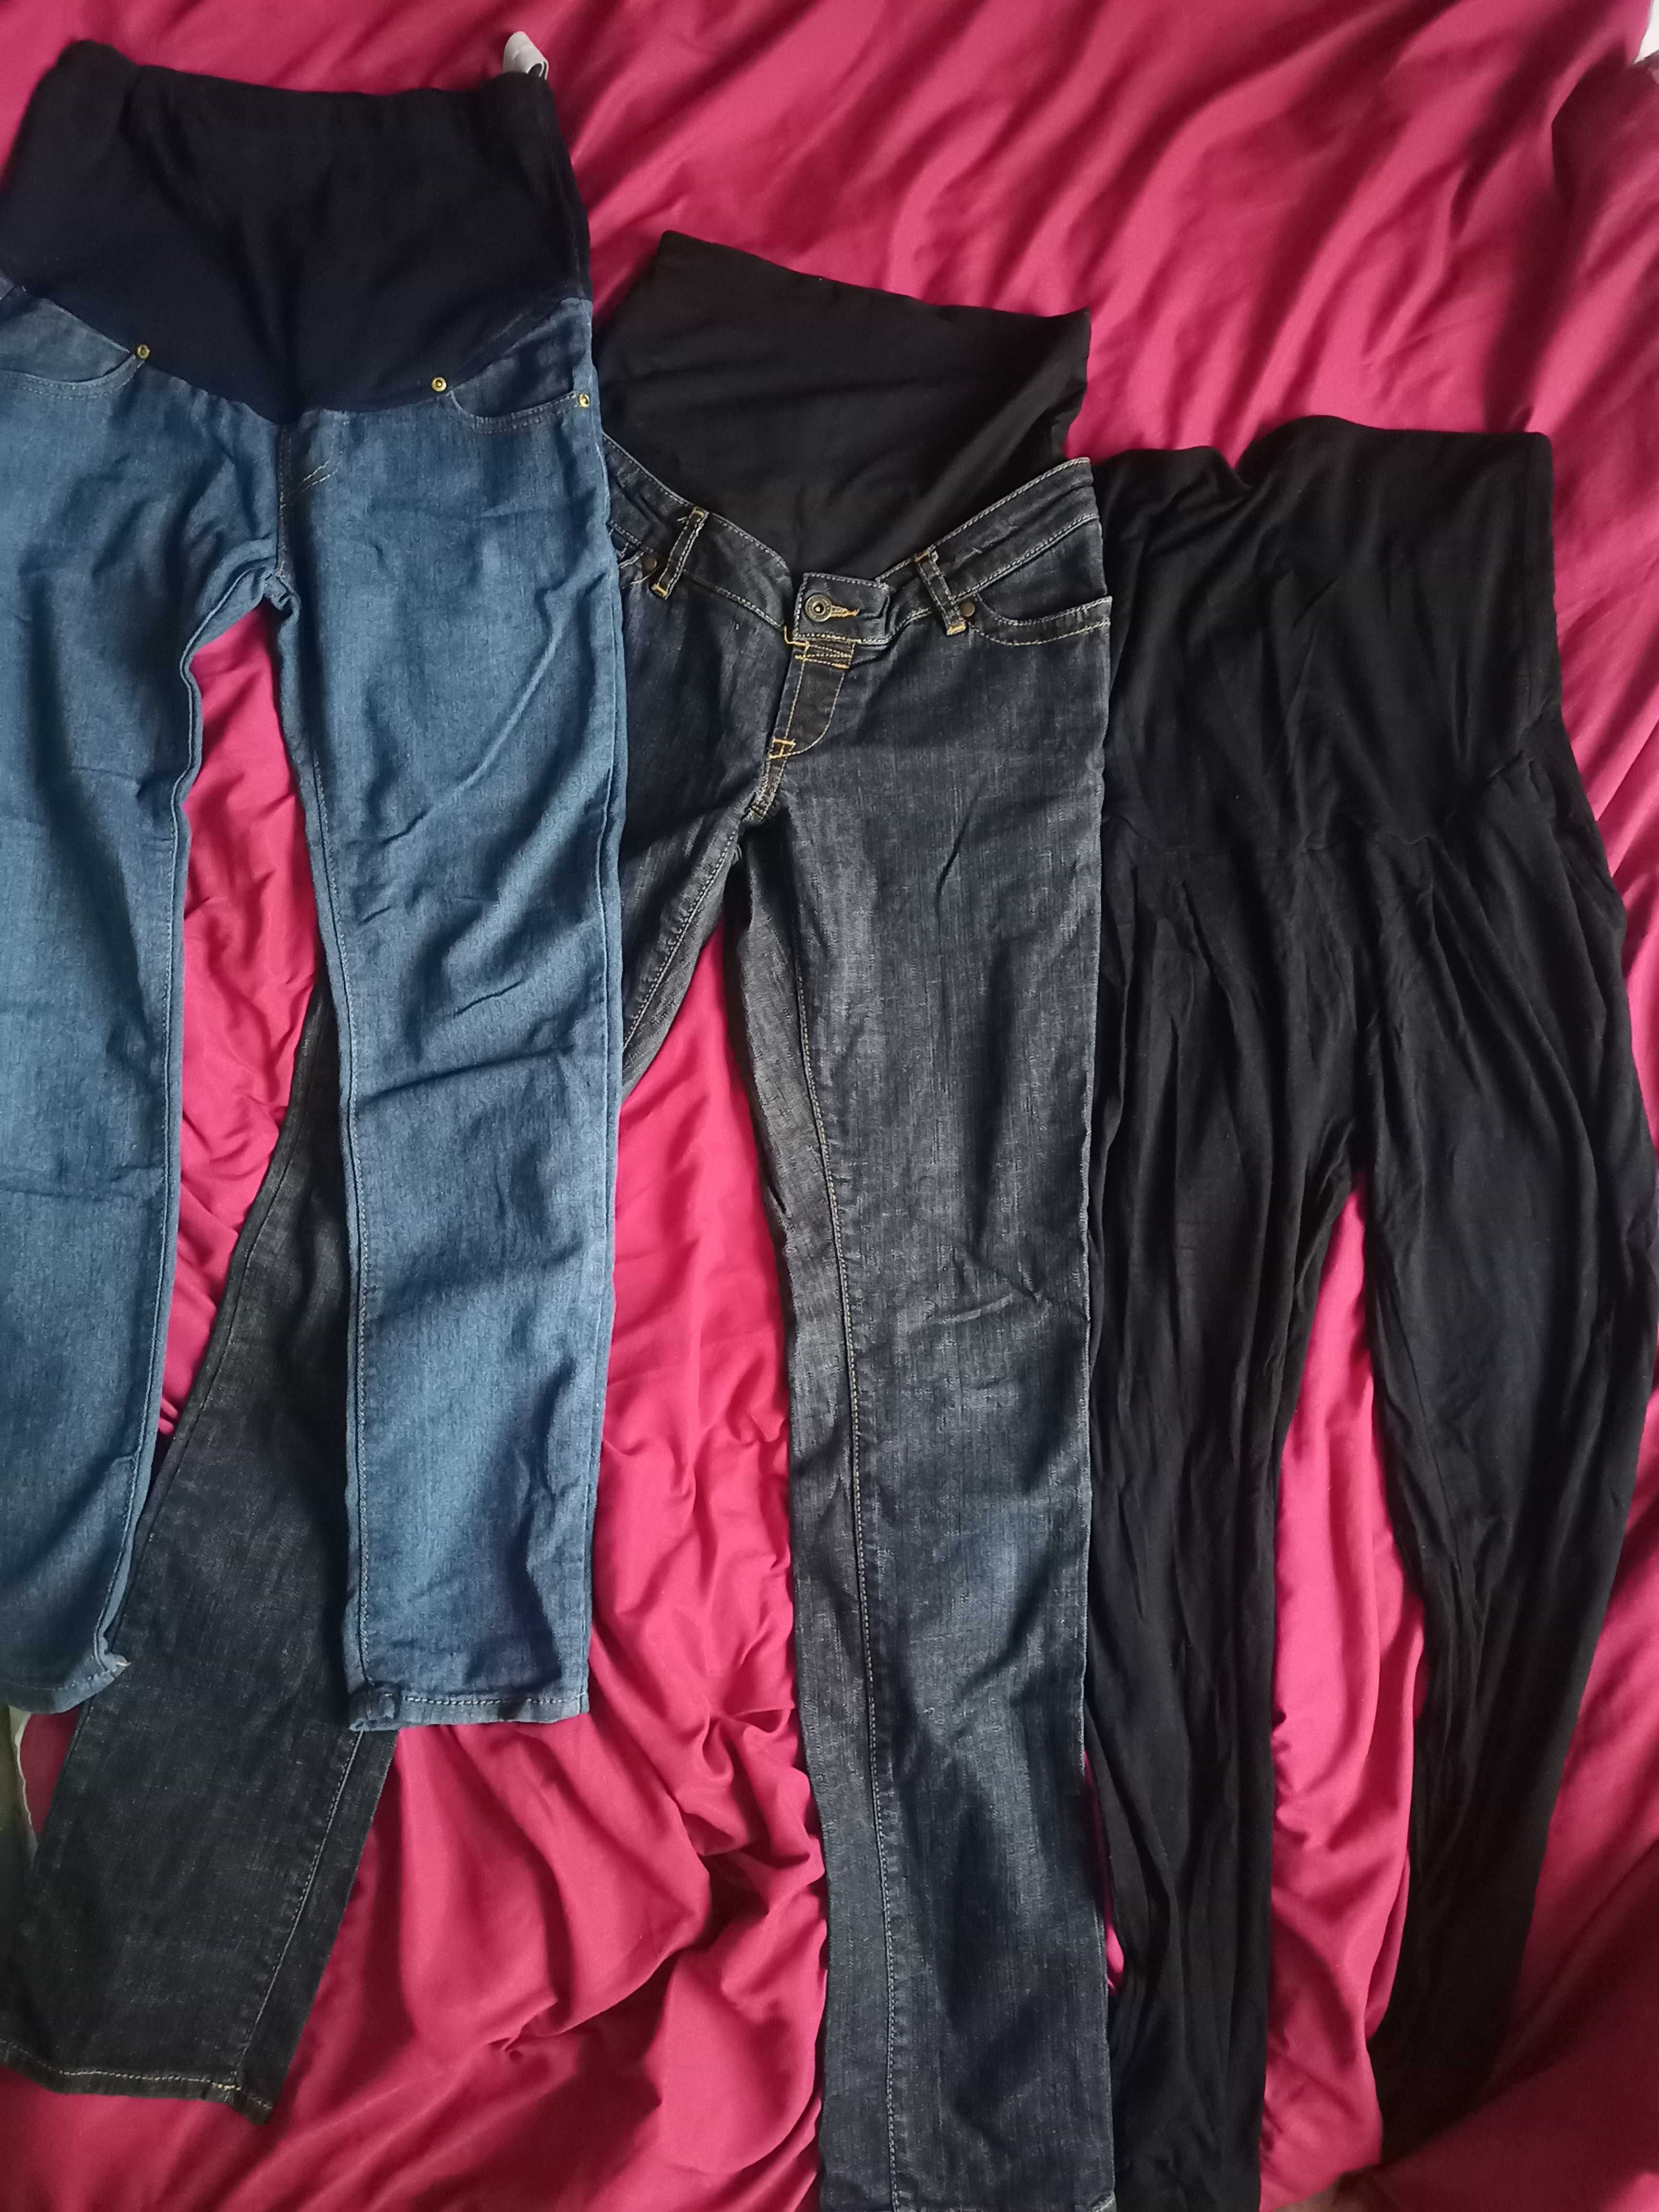 Spodnie ciążowe S 36 jeansy dżinsy alladynki ciąża paka spodni